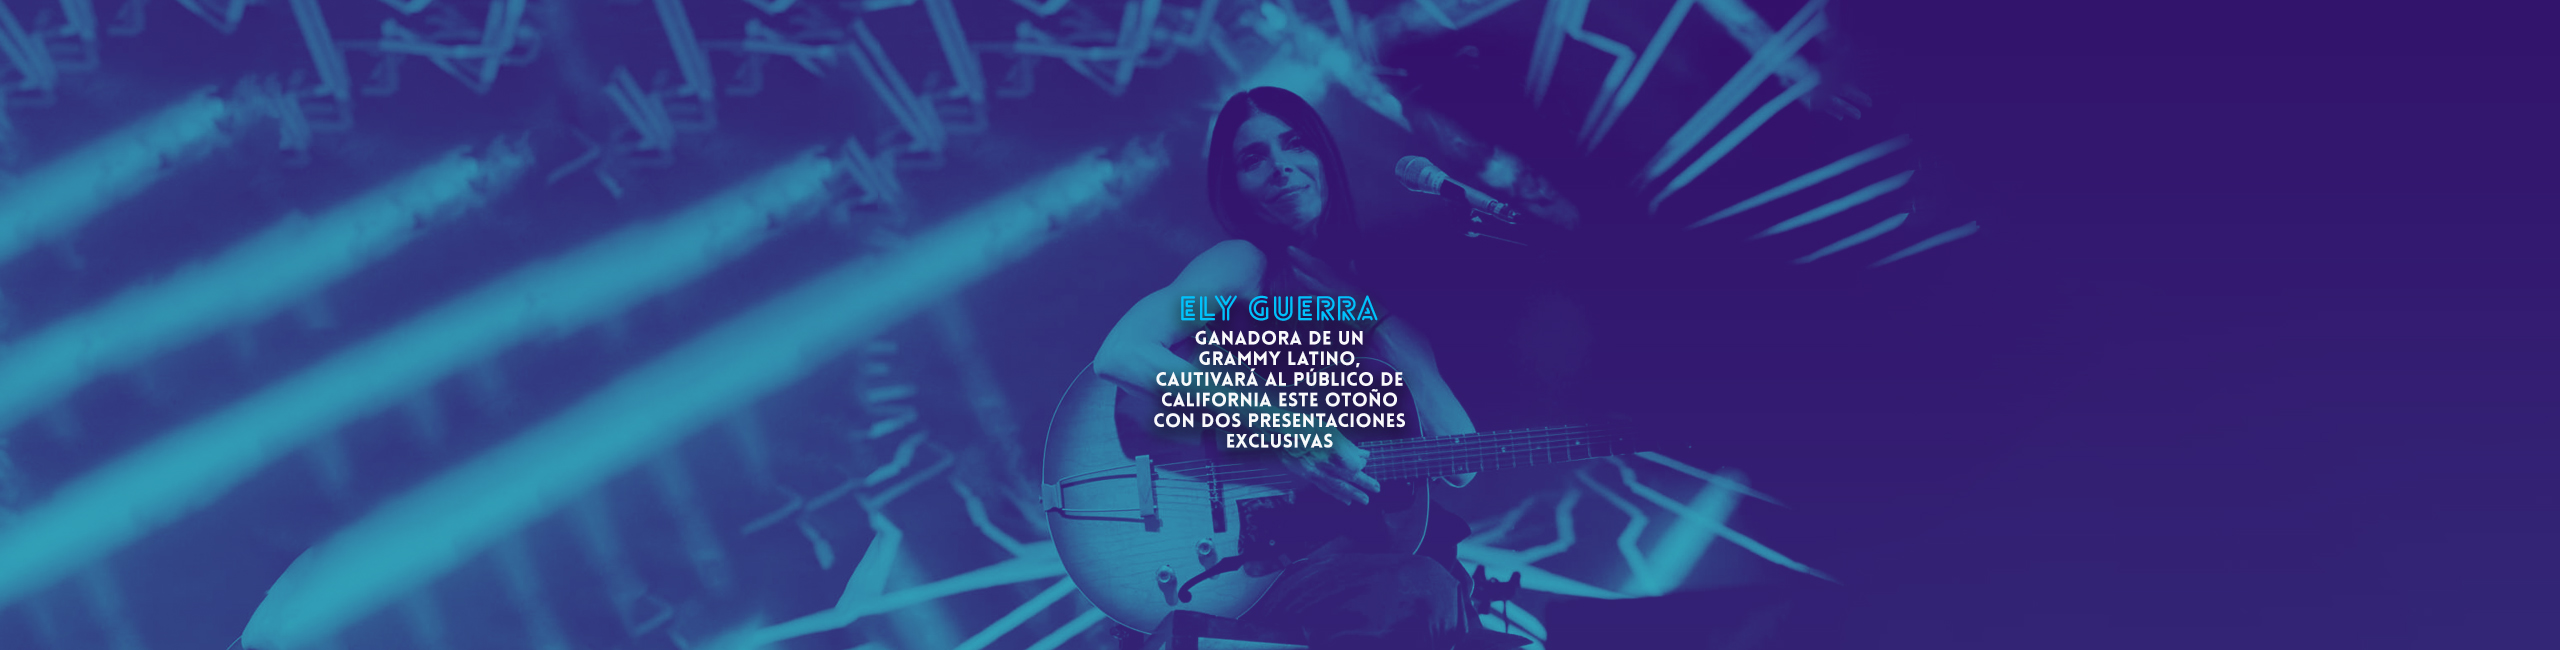 Ely Guerra ganadora de un Grammy Latino, cautivará al público de California este otoño con dos presentaciones exclusivas.